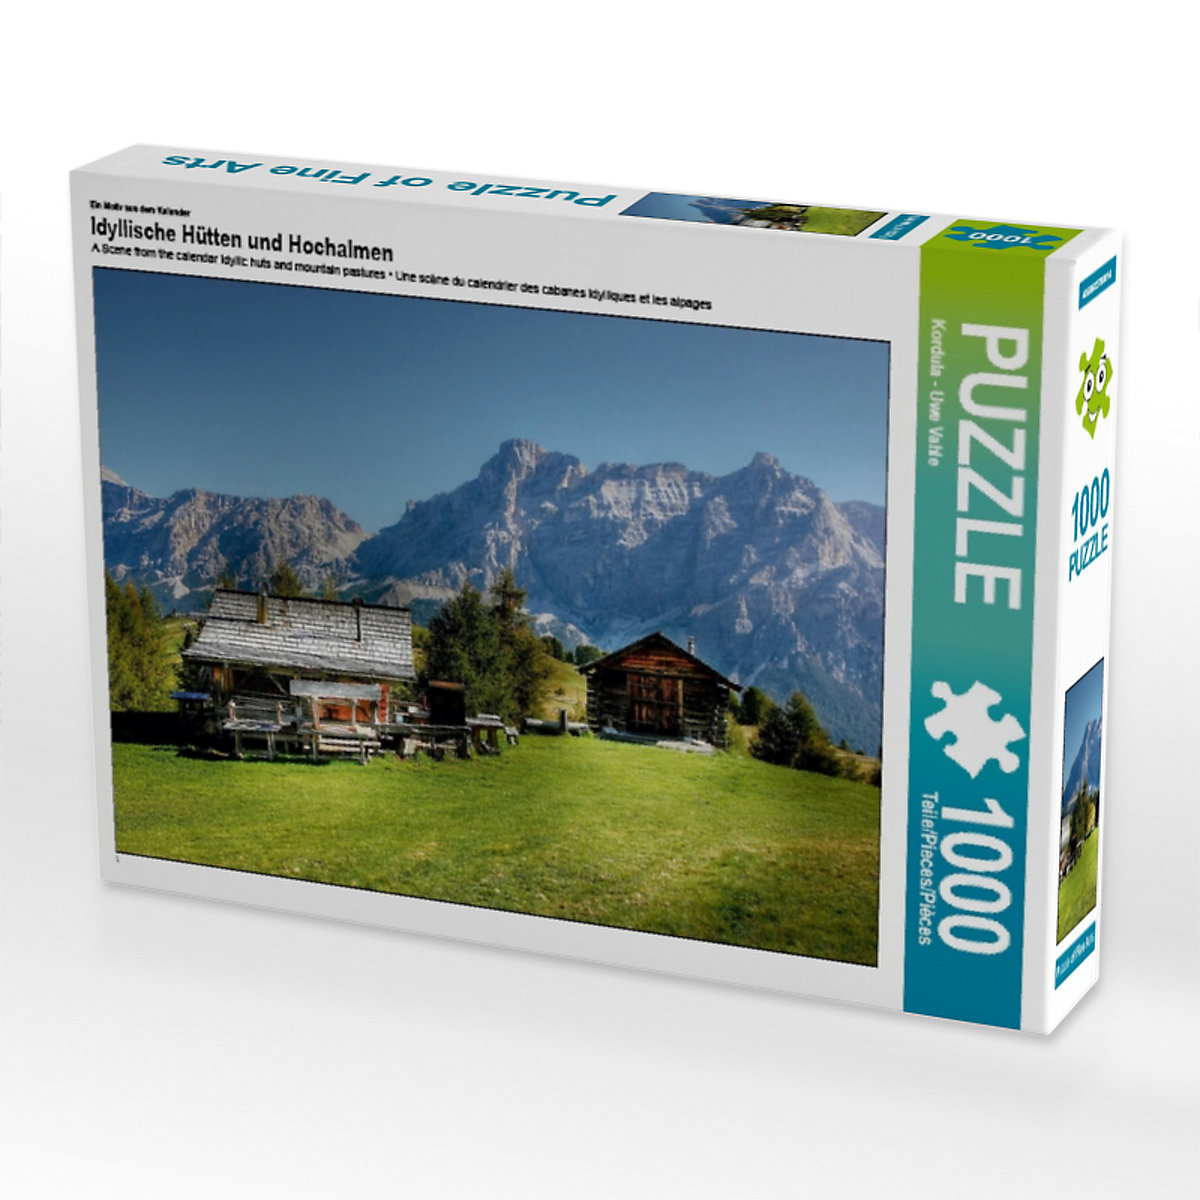 CALVENDO® Puzzle CALVENDO Puzzle Idyllische Hütten und Hochalmen 1000 Teile Foto-Puzzle für glückliche Stunden